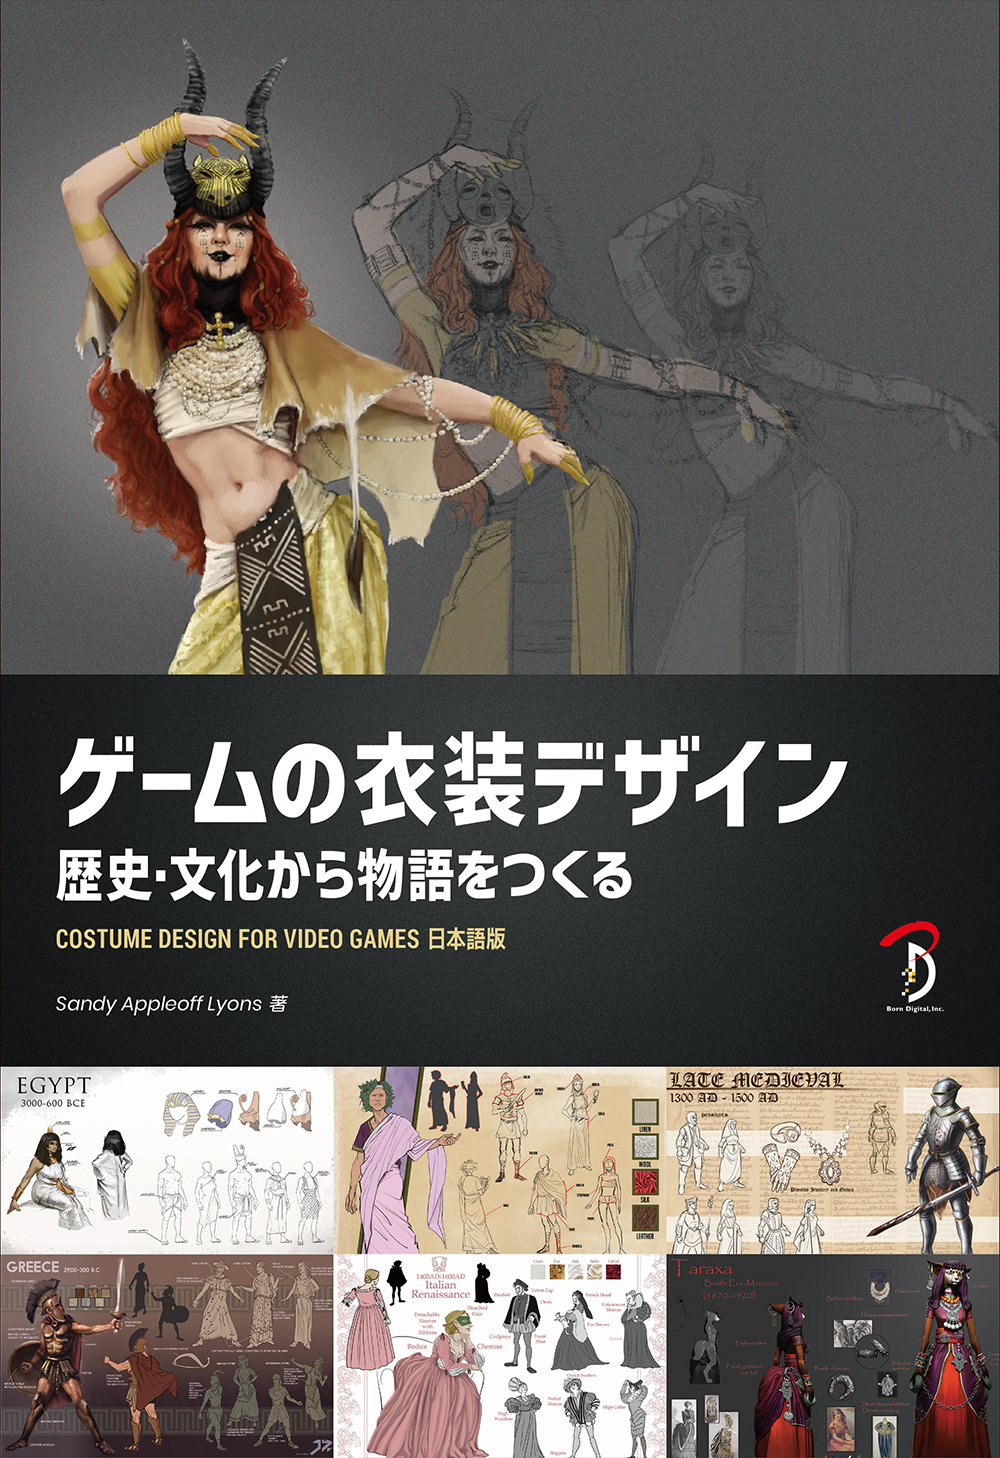 ボーンデジタル、書籍『ゲームの衣装デザイン:歴史・文化から物語をつくる』を刊行